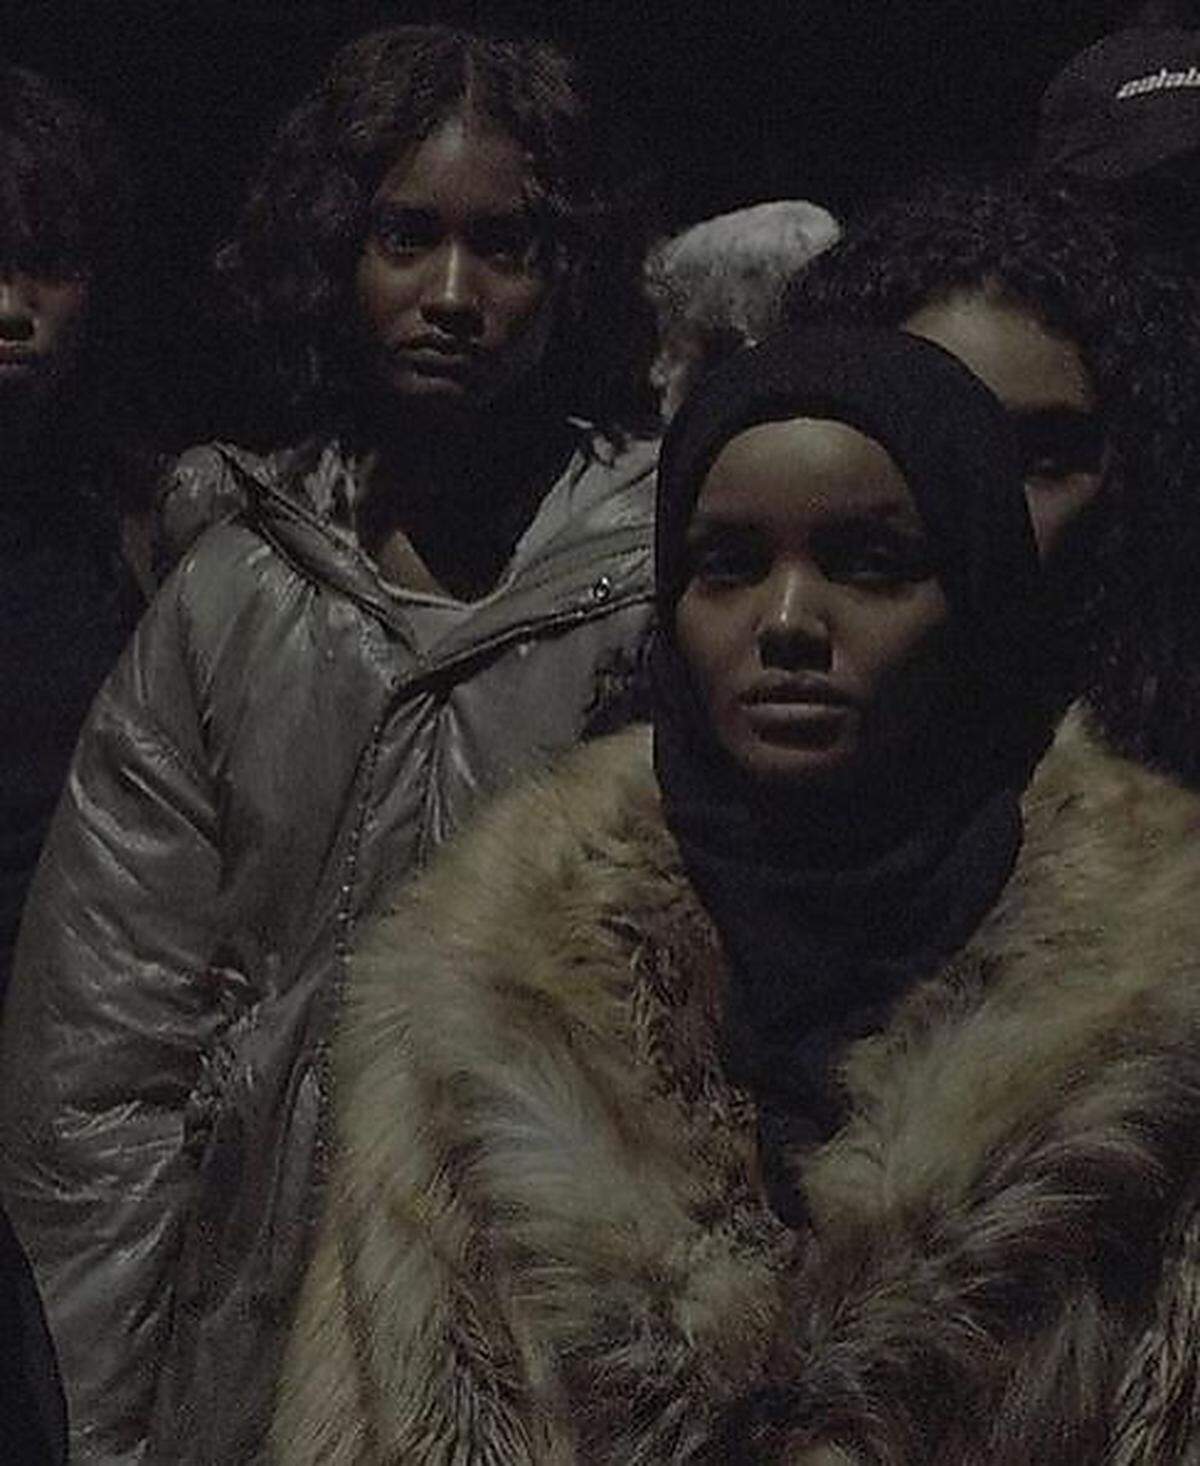 Davor hatte Halima Aden bereits einen Auftritt auf Kanye Wests "Yeezy"-Schau während der Fashion Week in New York City - ihr Catwalk-Debüt. Die Modezeitschrift "Vogue" schrieb, der Auftritt habe eine "bedeutsame Debatte" über muslimische Frauen bei der Fashion Week angestoßen. Aden selbst sagte dem Magazin, es sei noch immer schwierig für sie, geeignete Mode zu finden.